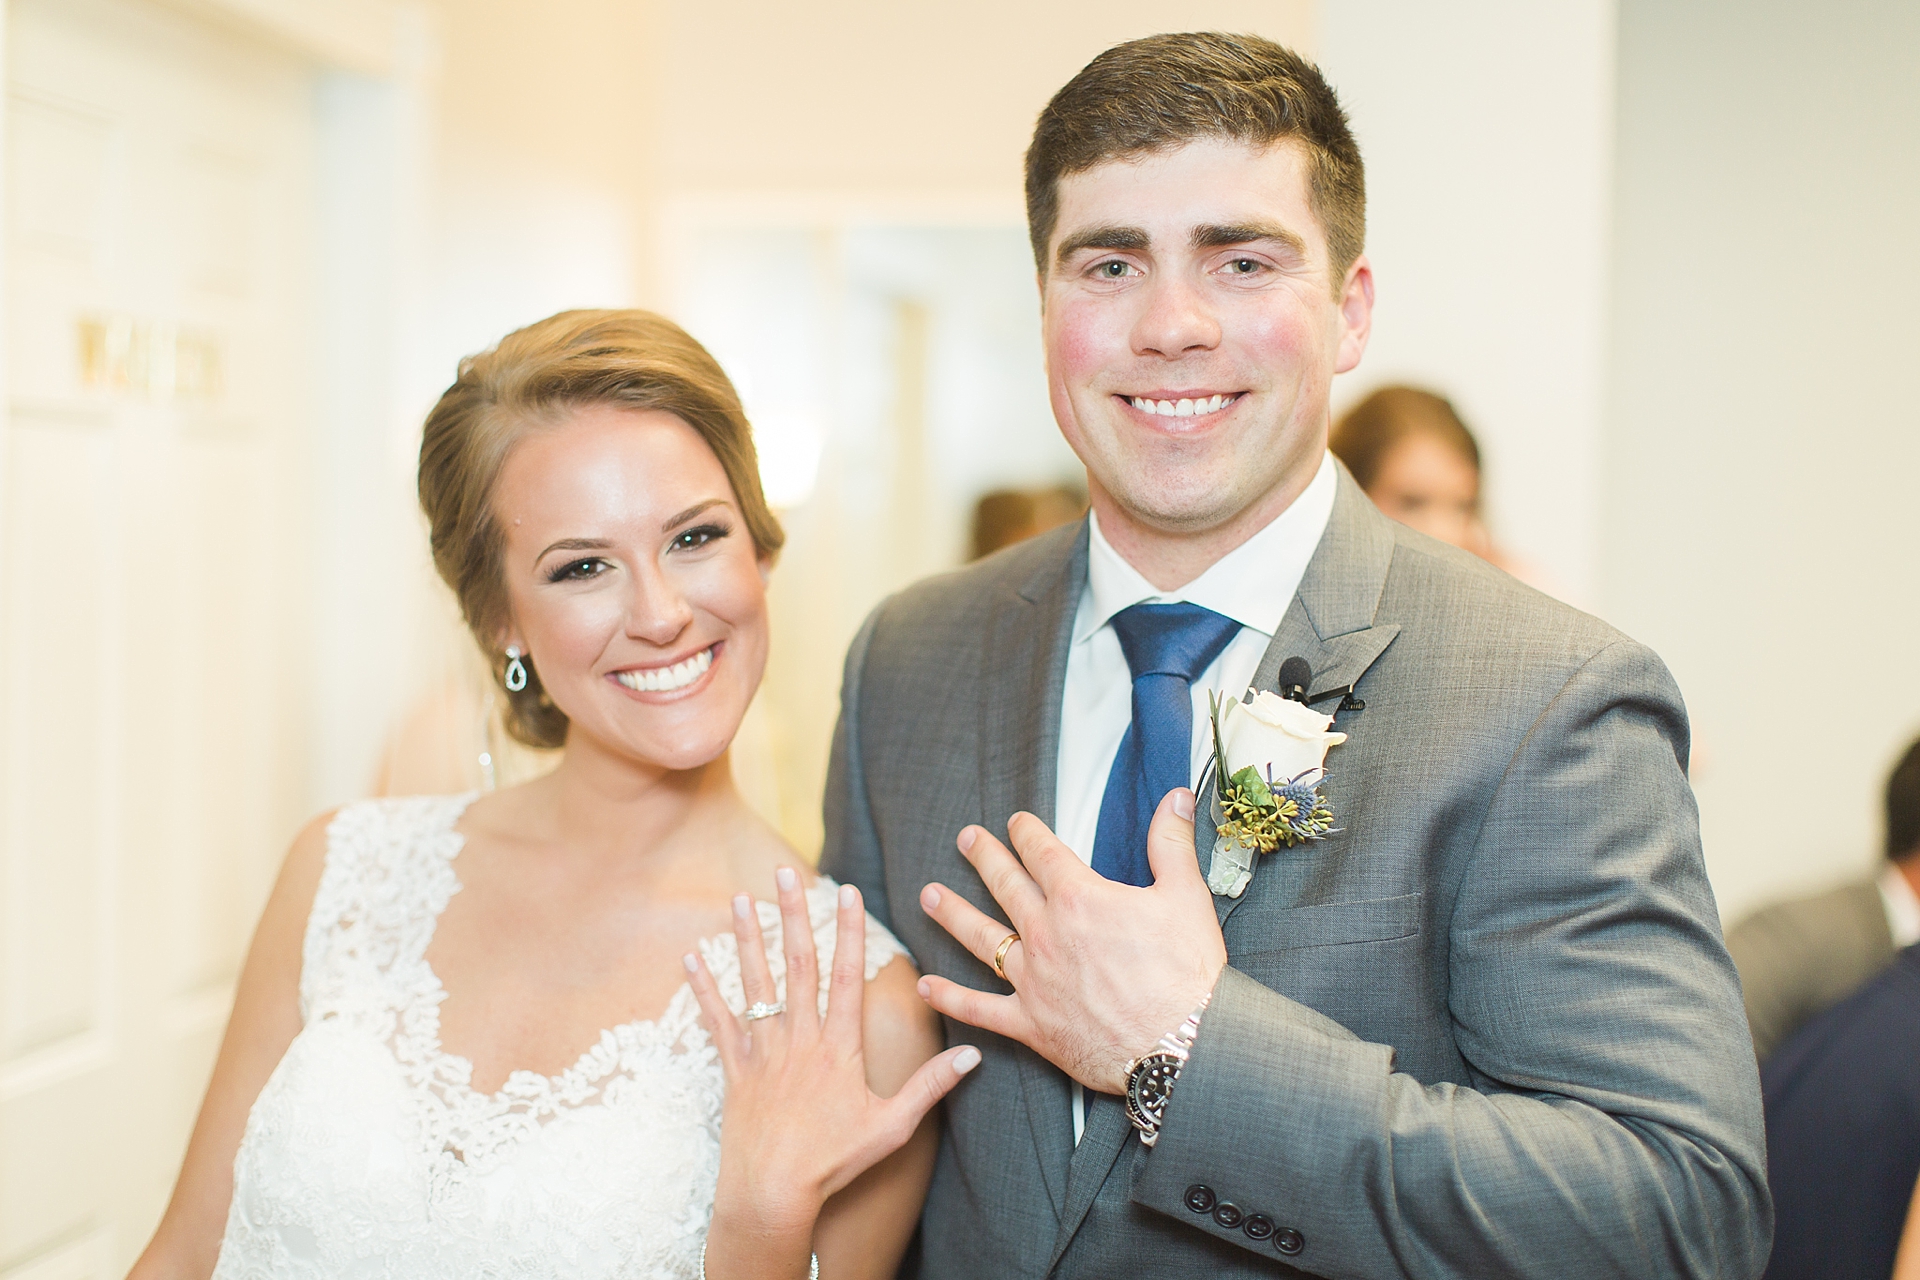 bride and groom flash wedding rings